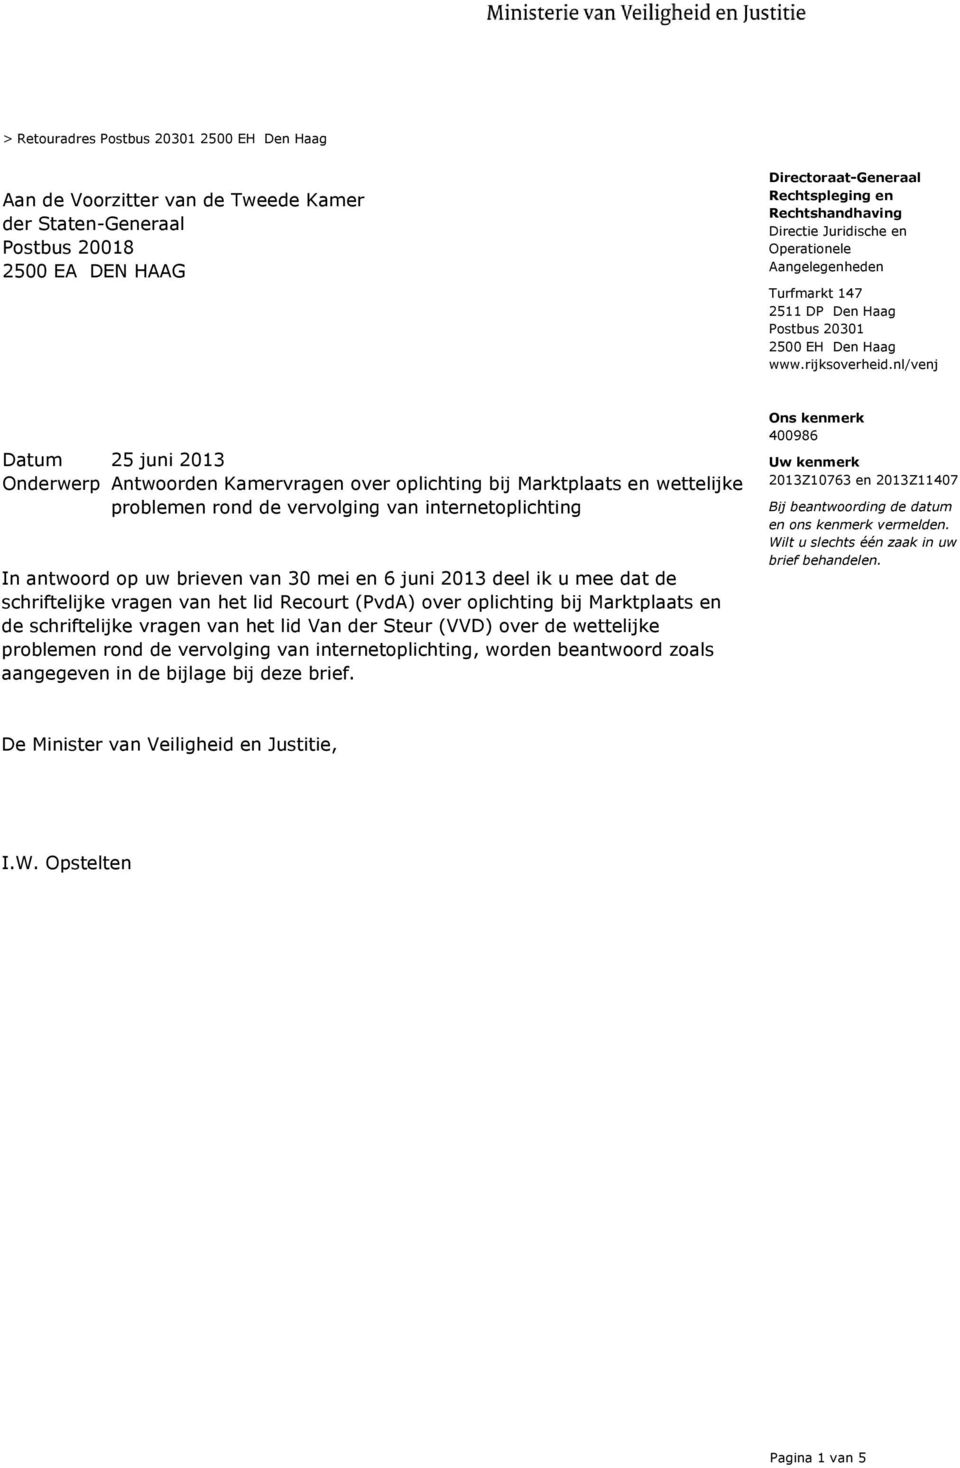 nl/venj Onderwerp Antwoorden Kamervragen over oplichting bij Marktplaats en wettelijke problemen rond de vervolging van internetoplichting In antwoord op uw brieven van 30 mei en 6 juni 2013 deel ik